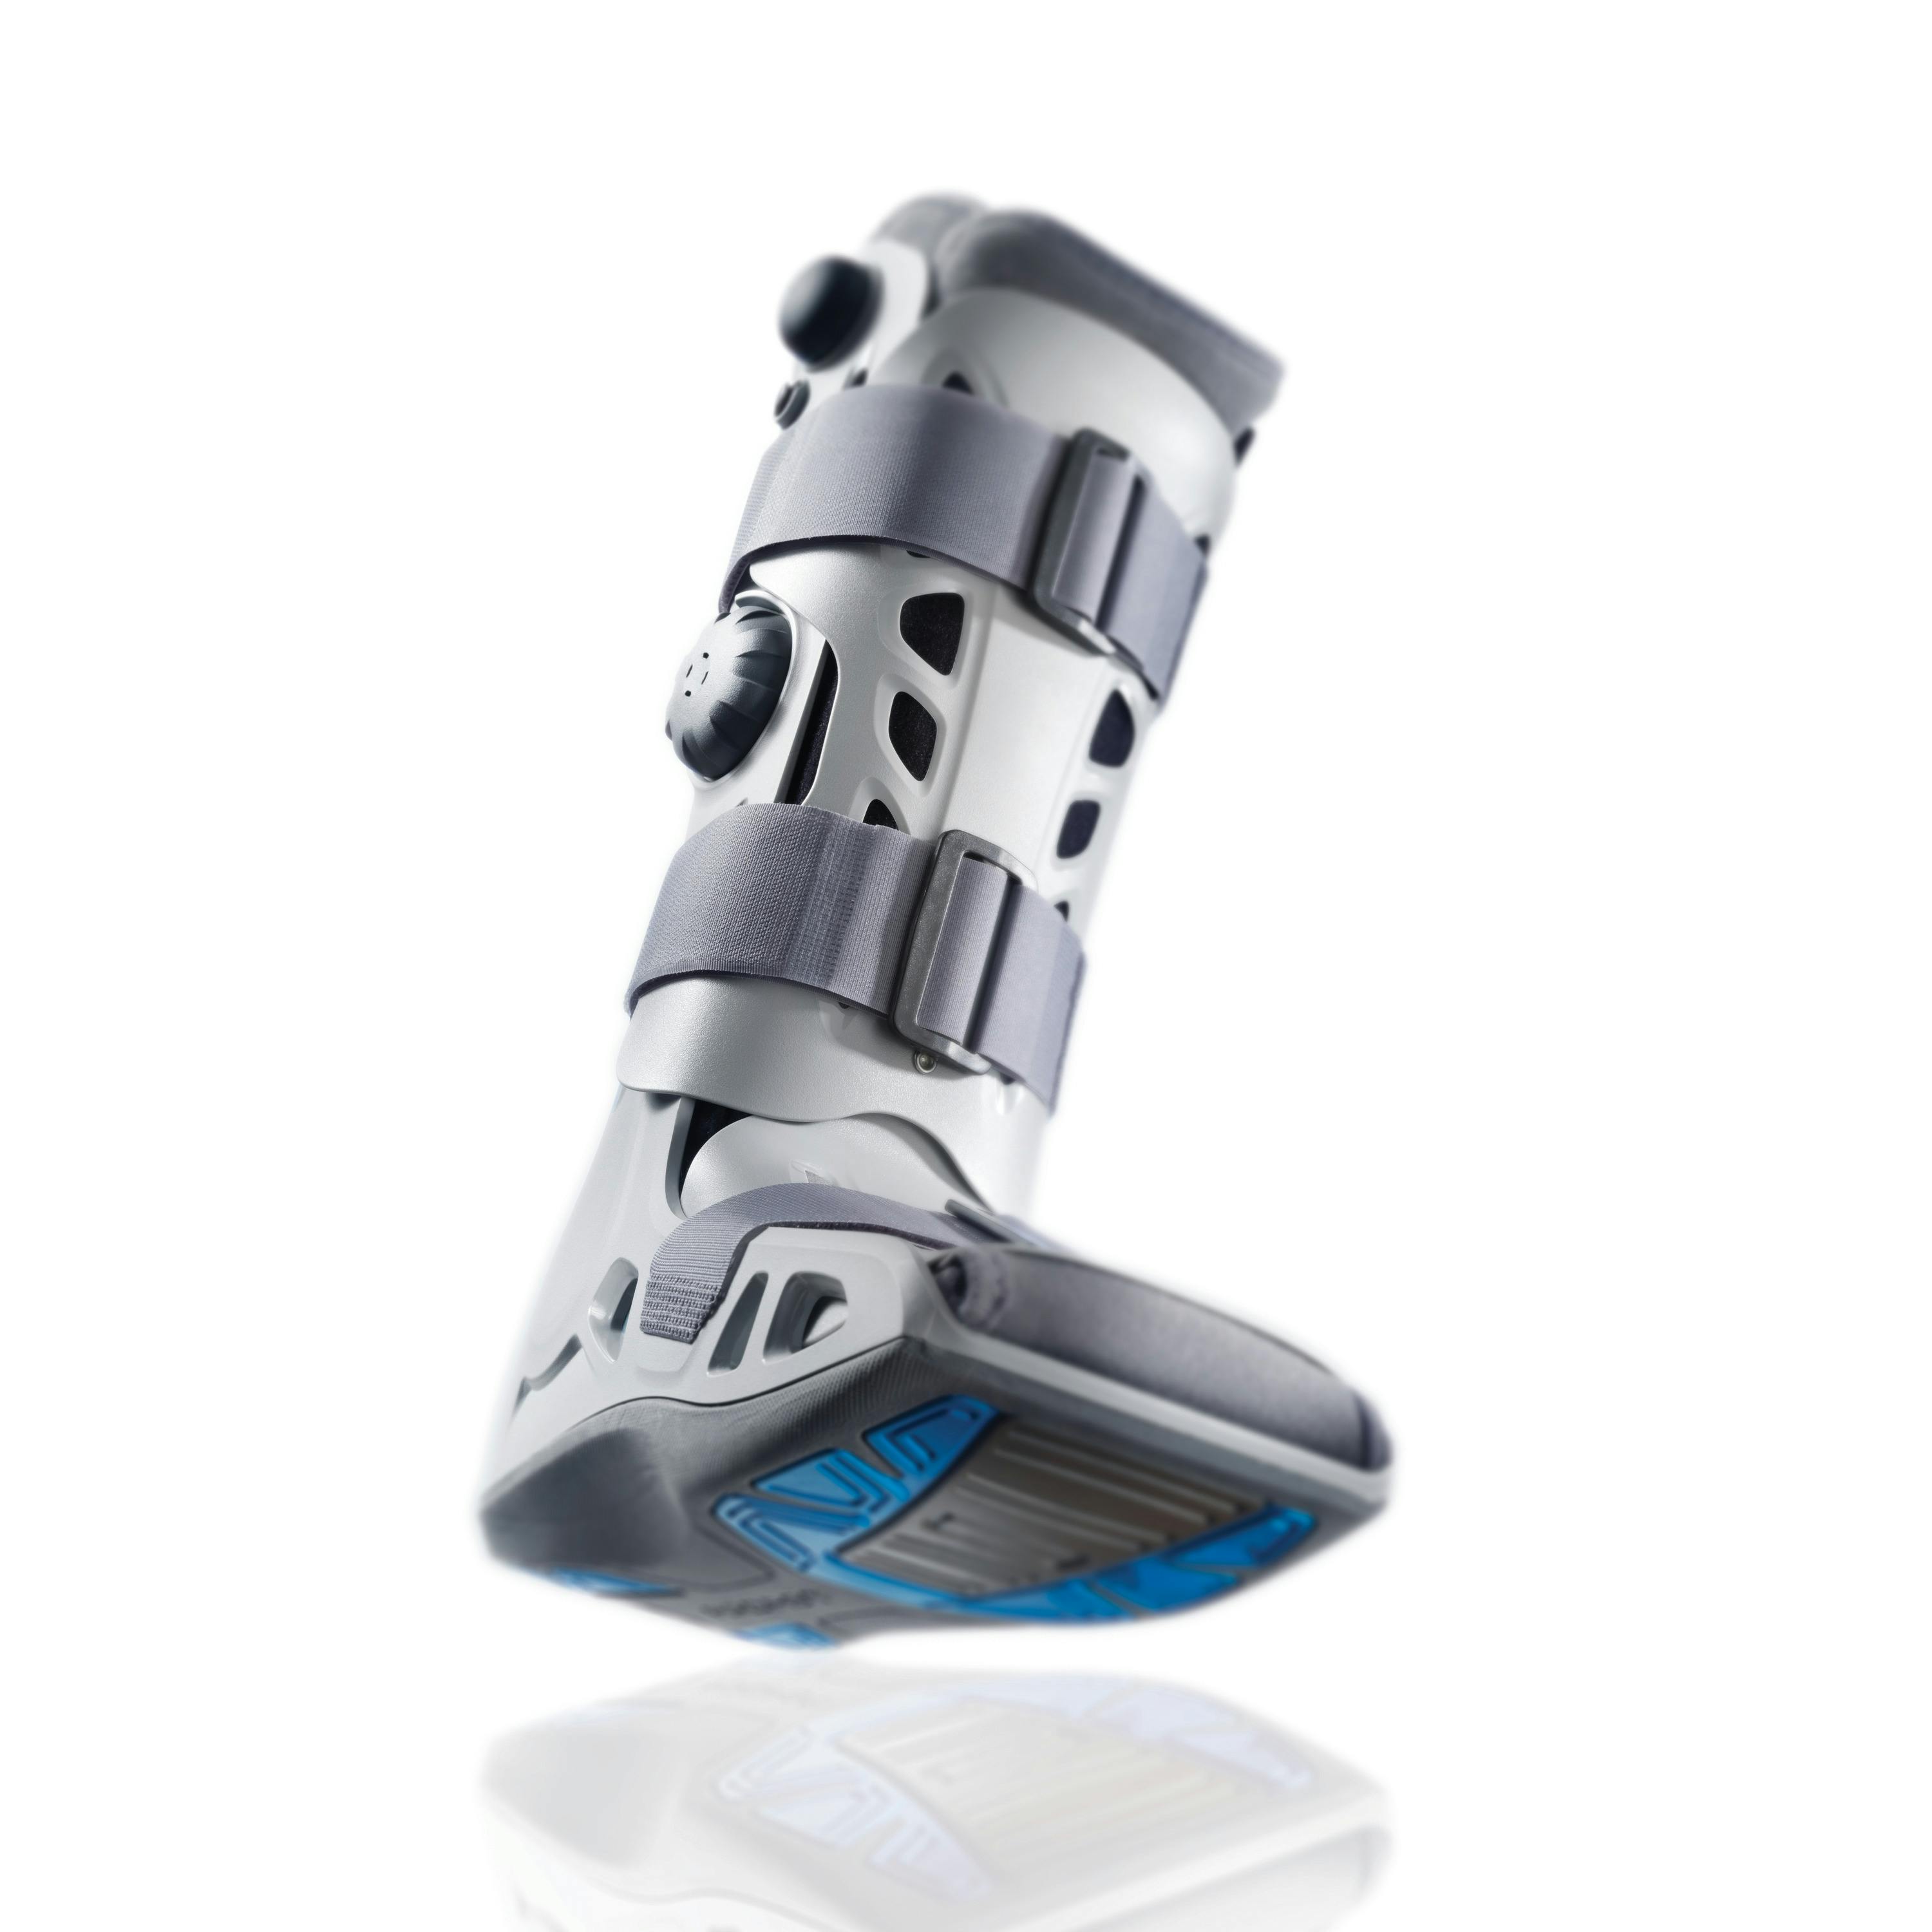 Zusatzbild AIRCAST® Airselect™ Elite Walker mit Spiegelung, Unterschenkel-Fuß-Orthese zur Immobilisierung in vorgegebener Position